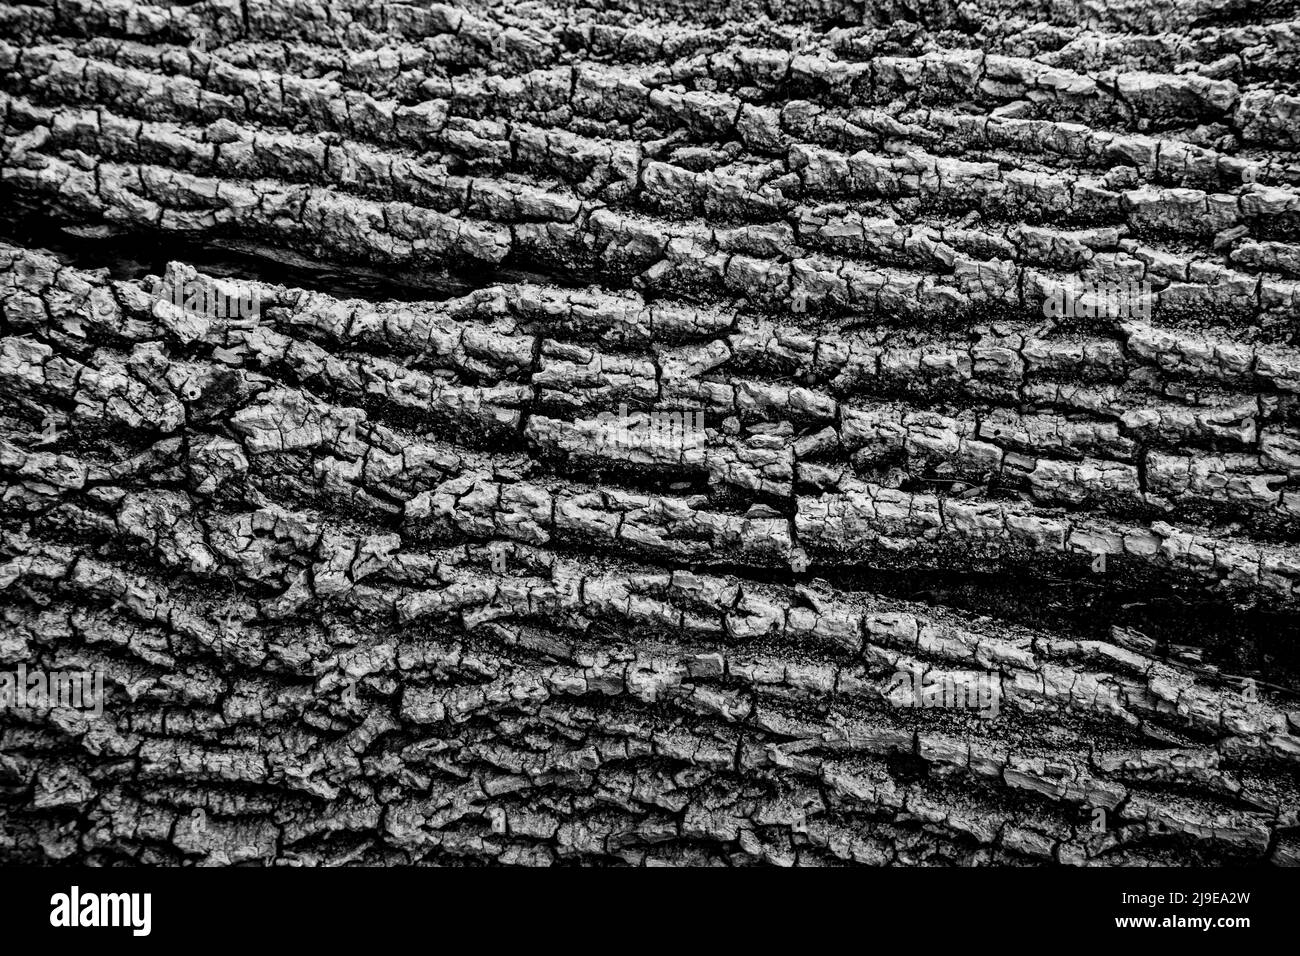 Eine Schwarz-Weiß-Nahaufnahme eines Baumstamms. Kann als Hintergrund, Tapete, Textur, Muster oder abstrakte - Stock-Fotografie verwendet werden Stockfoto